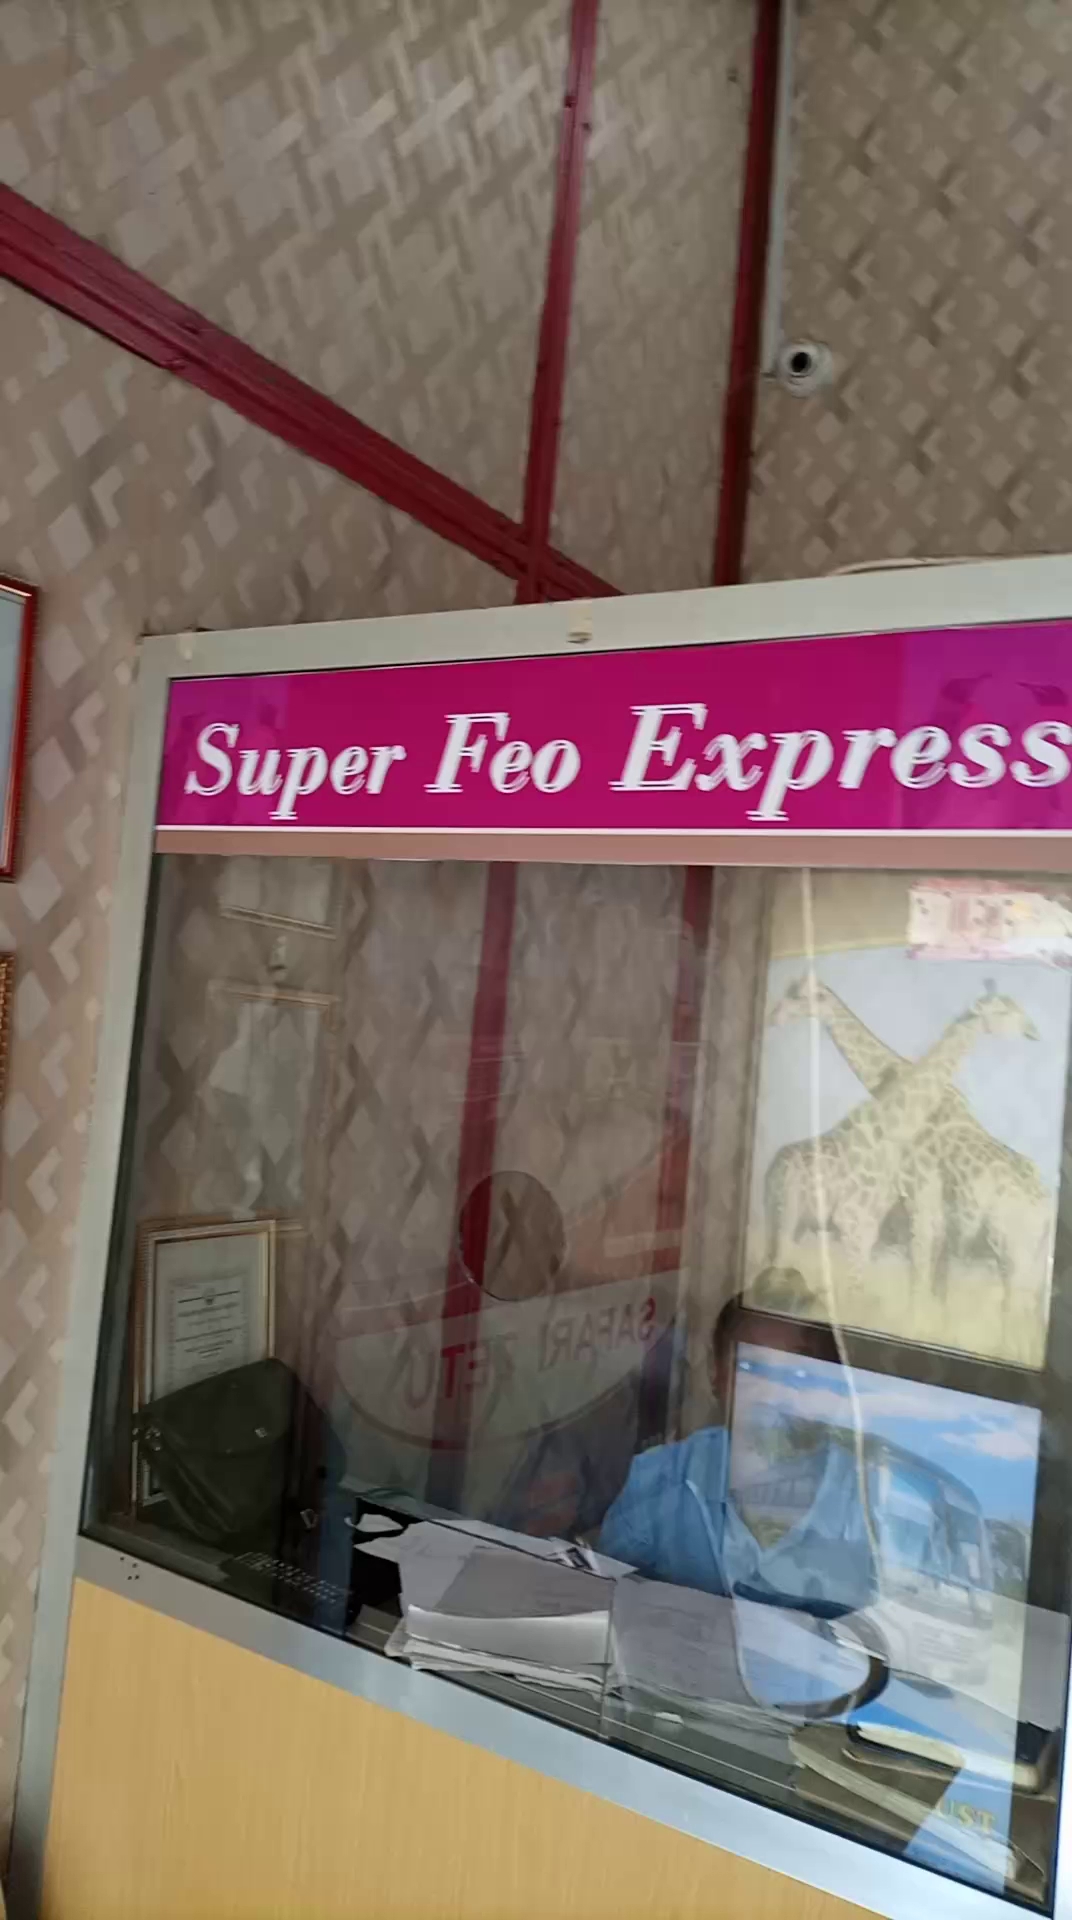 Super feo Express